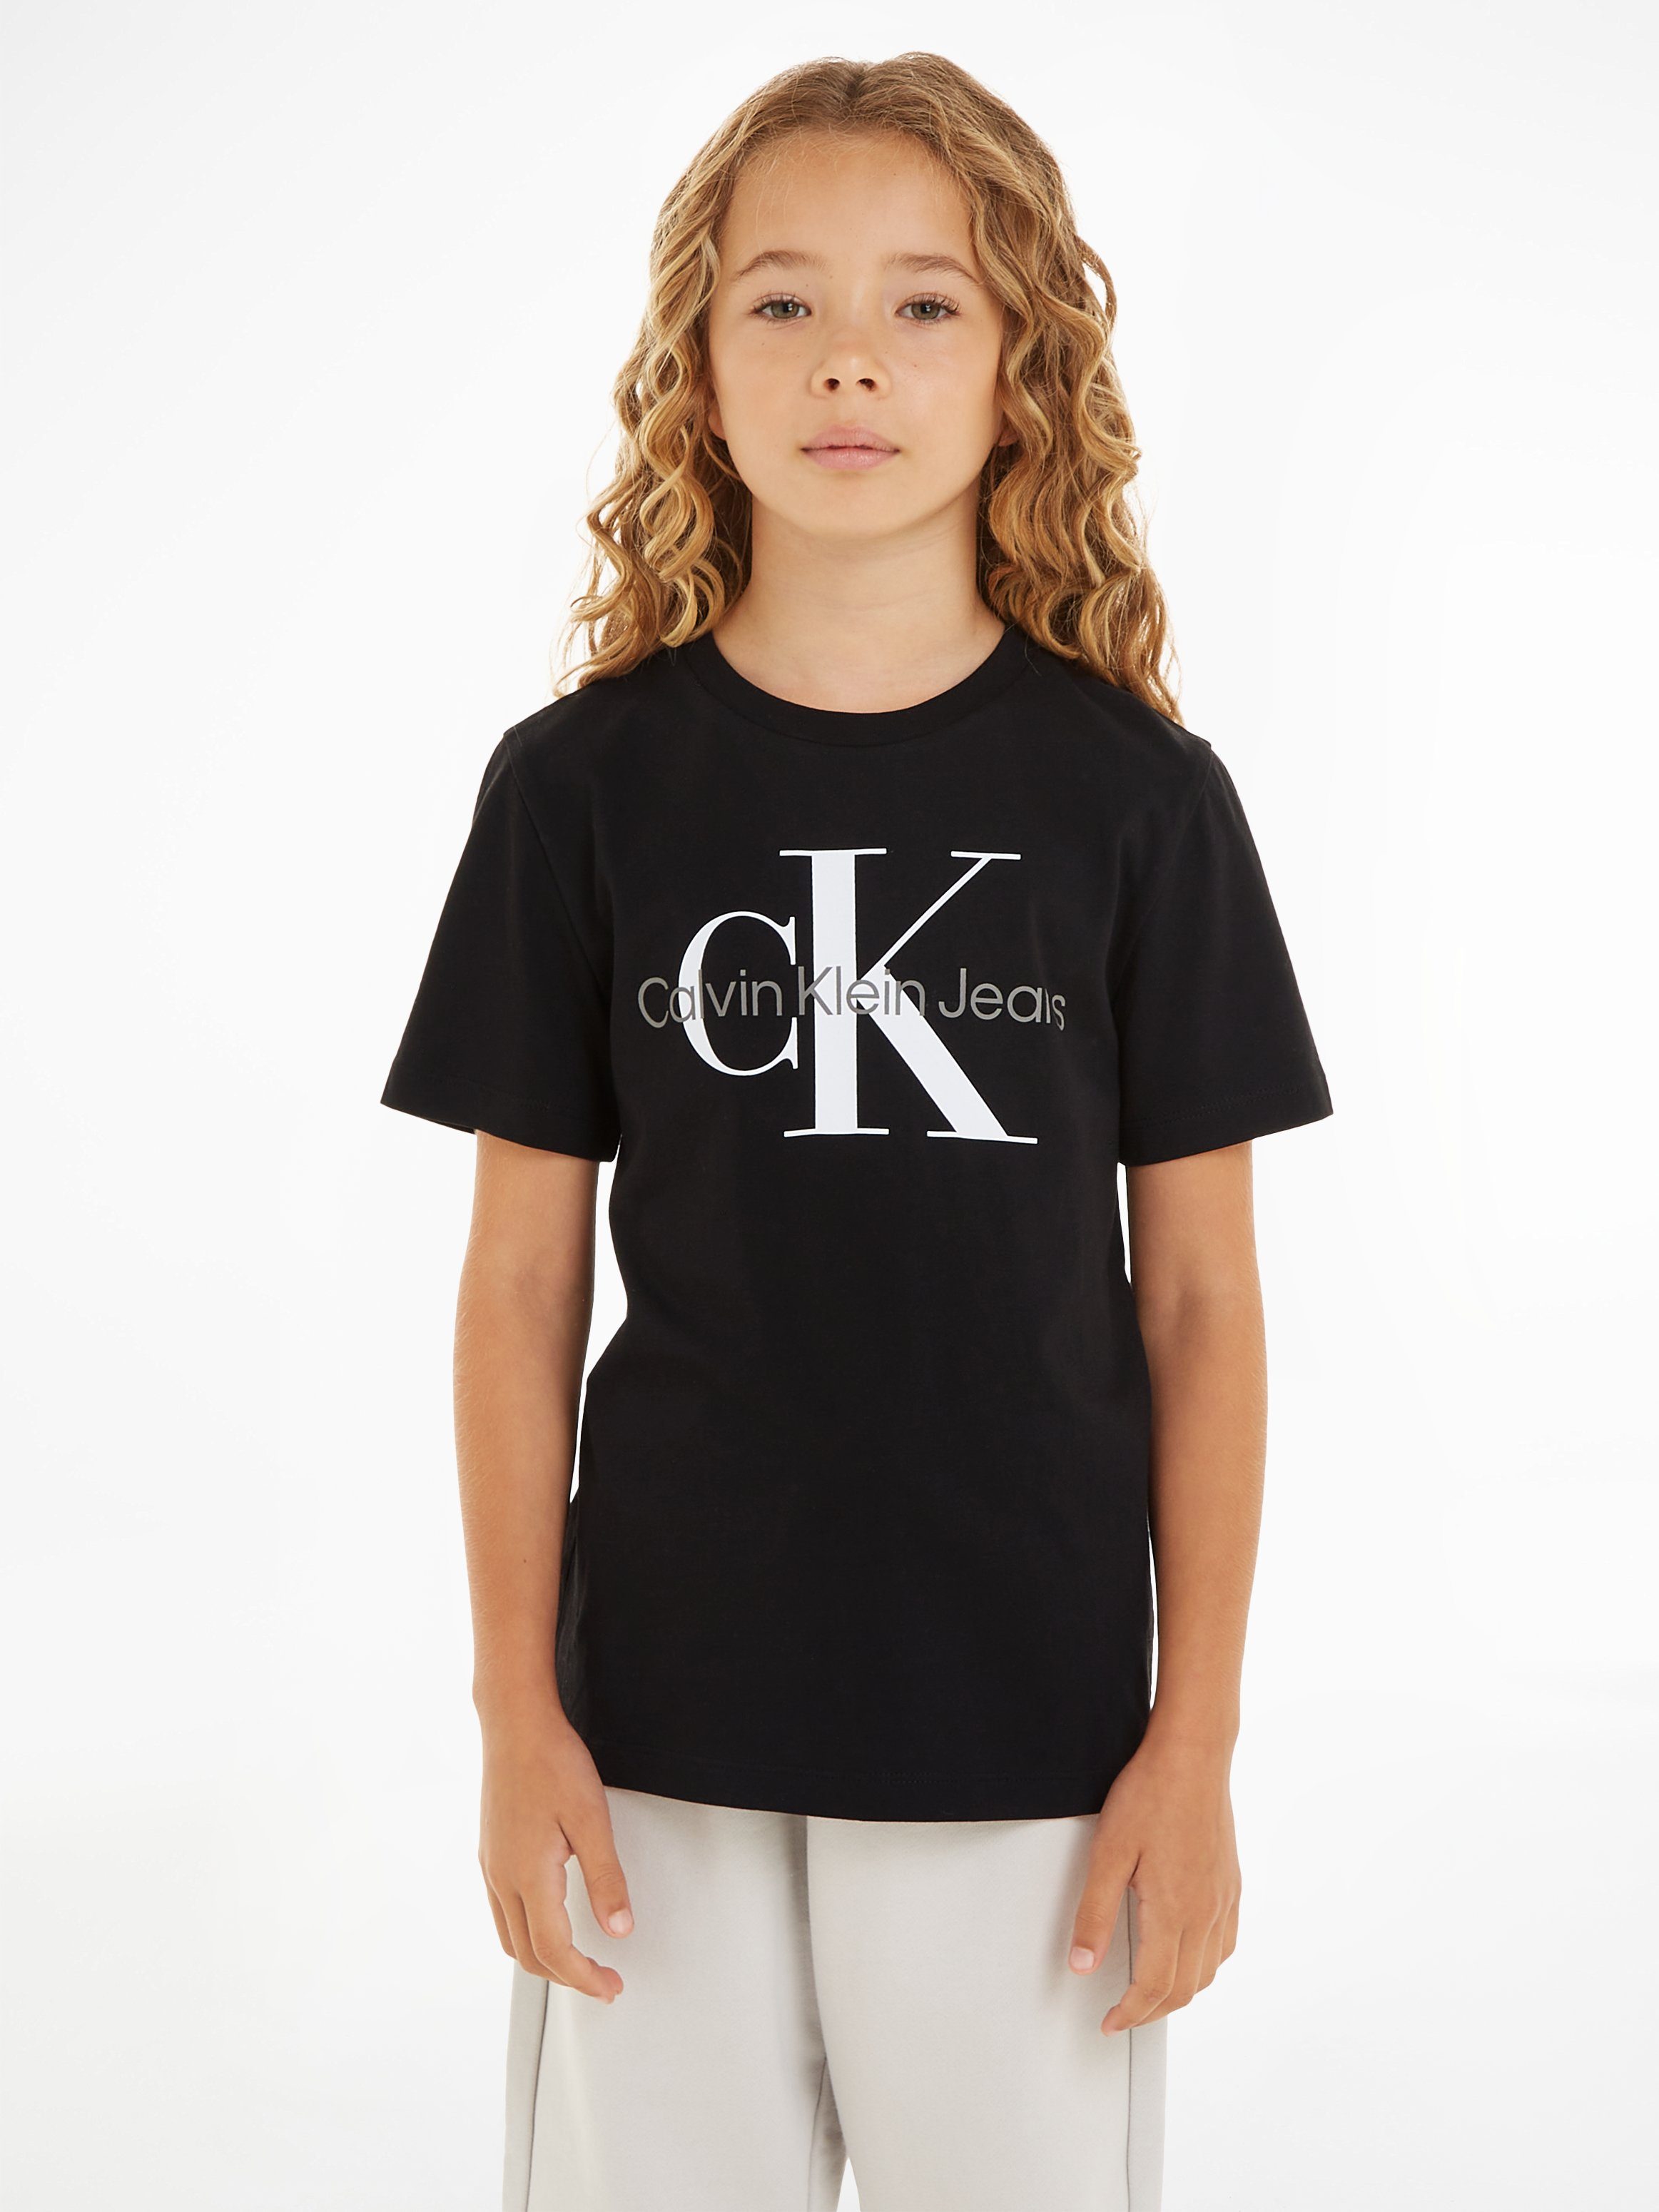 Calvin Klein Jeans Ck MONOGRAM T-Shirt SS T-SHIRT Black CK